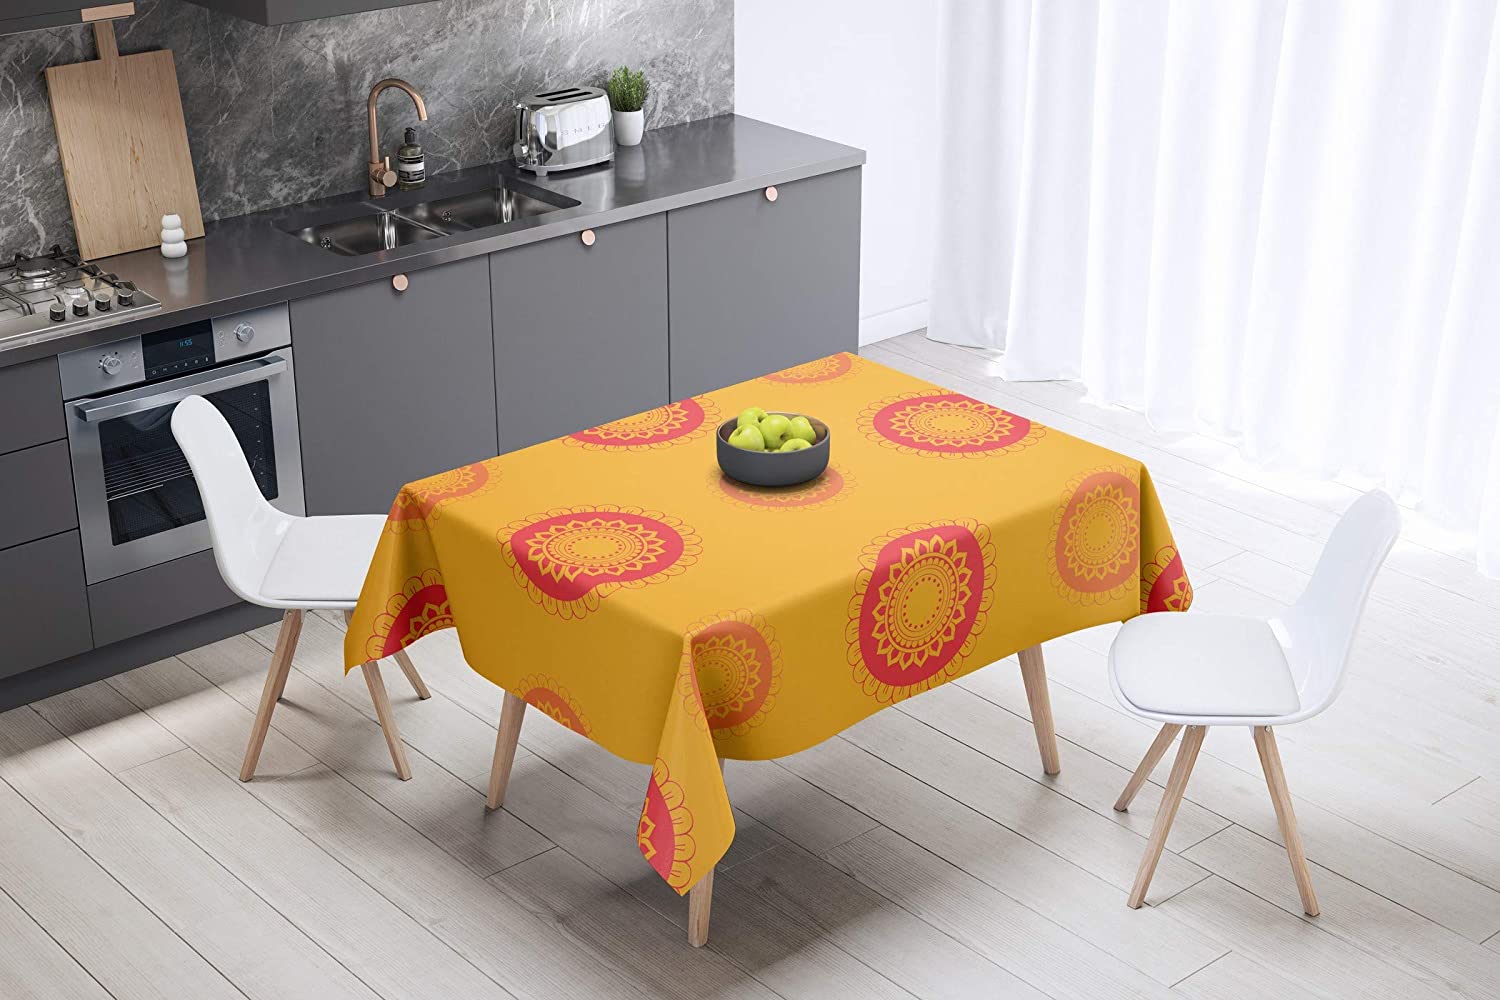 Bonamaison Sun Flower Design Orange Tablecloth 140cm x 140cm RRP 8.10 CLEARANCE XL 5.99